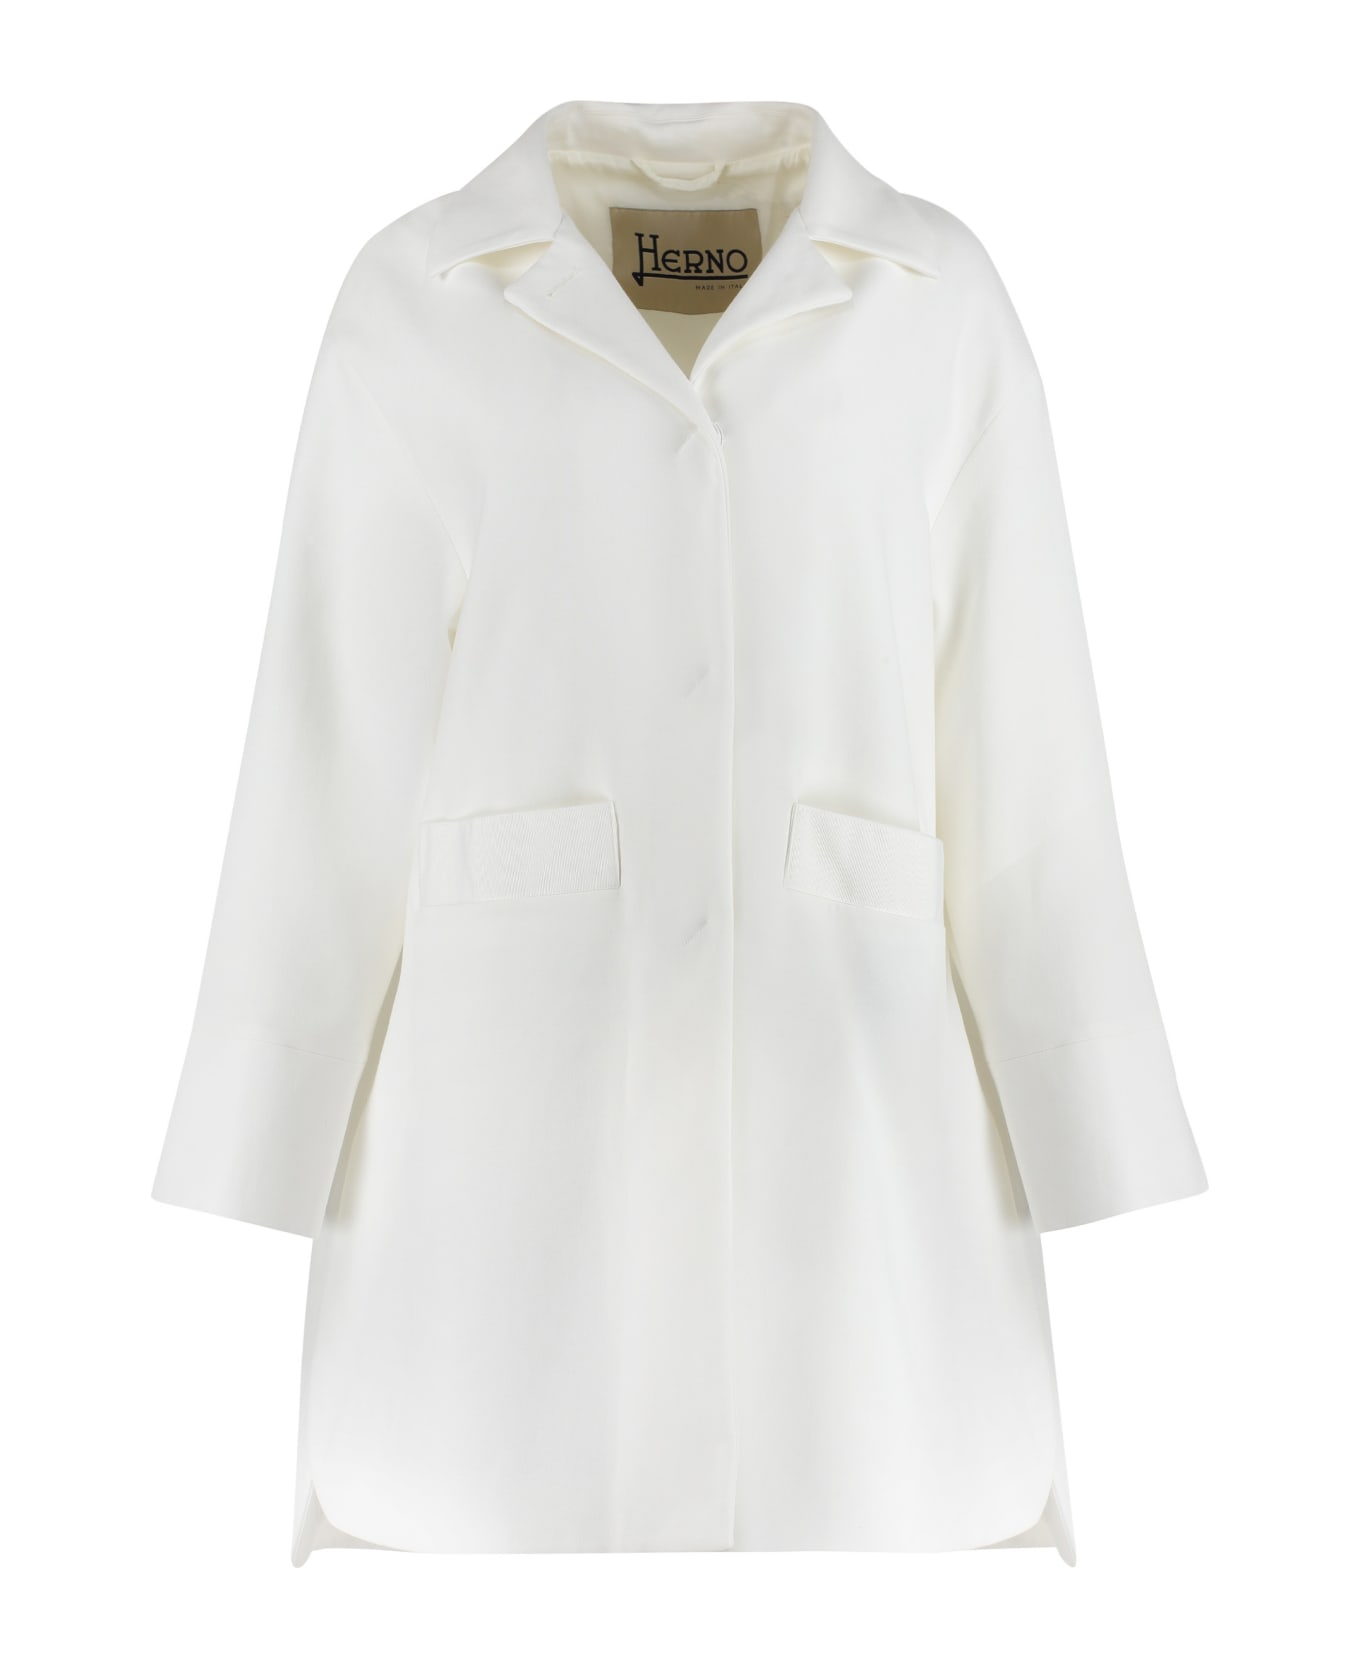 Herno Cotton Jacket - White